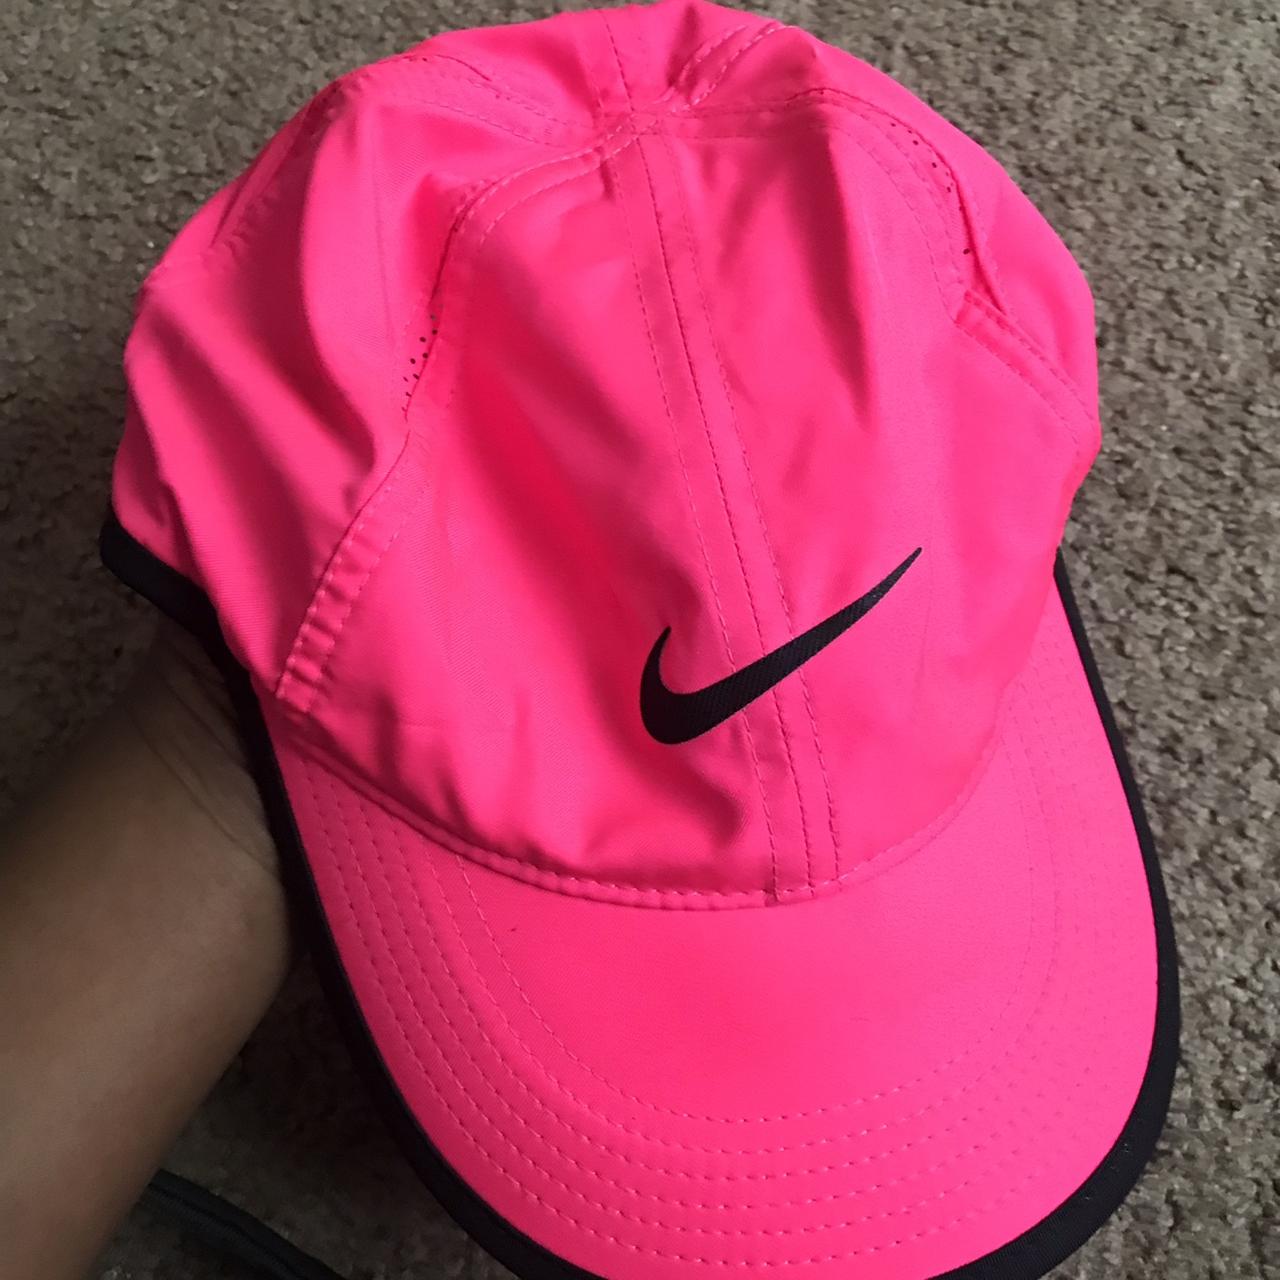 Hot pink nike hat never worn - Depop